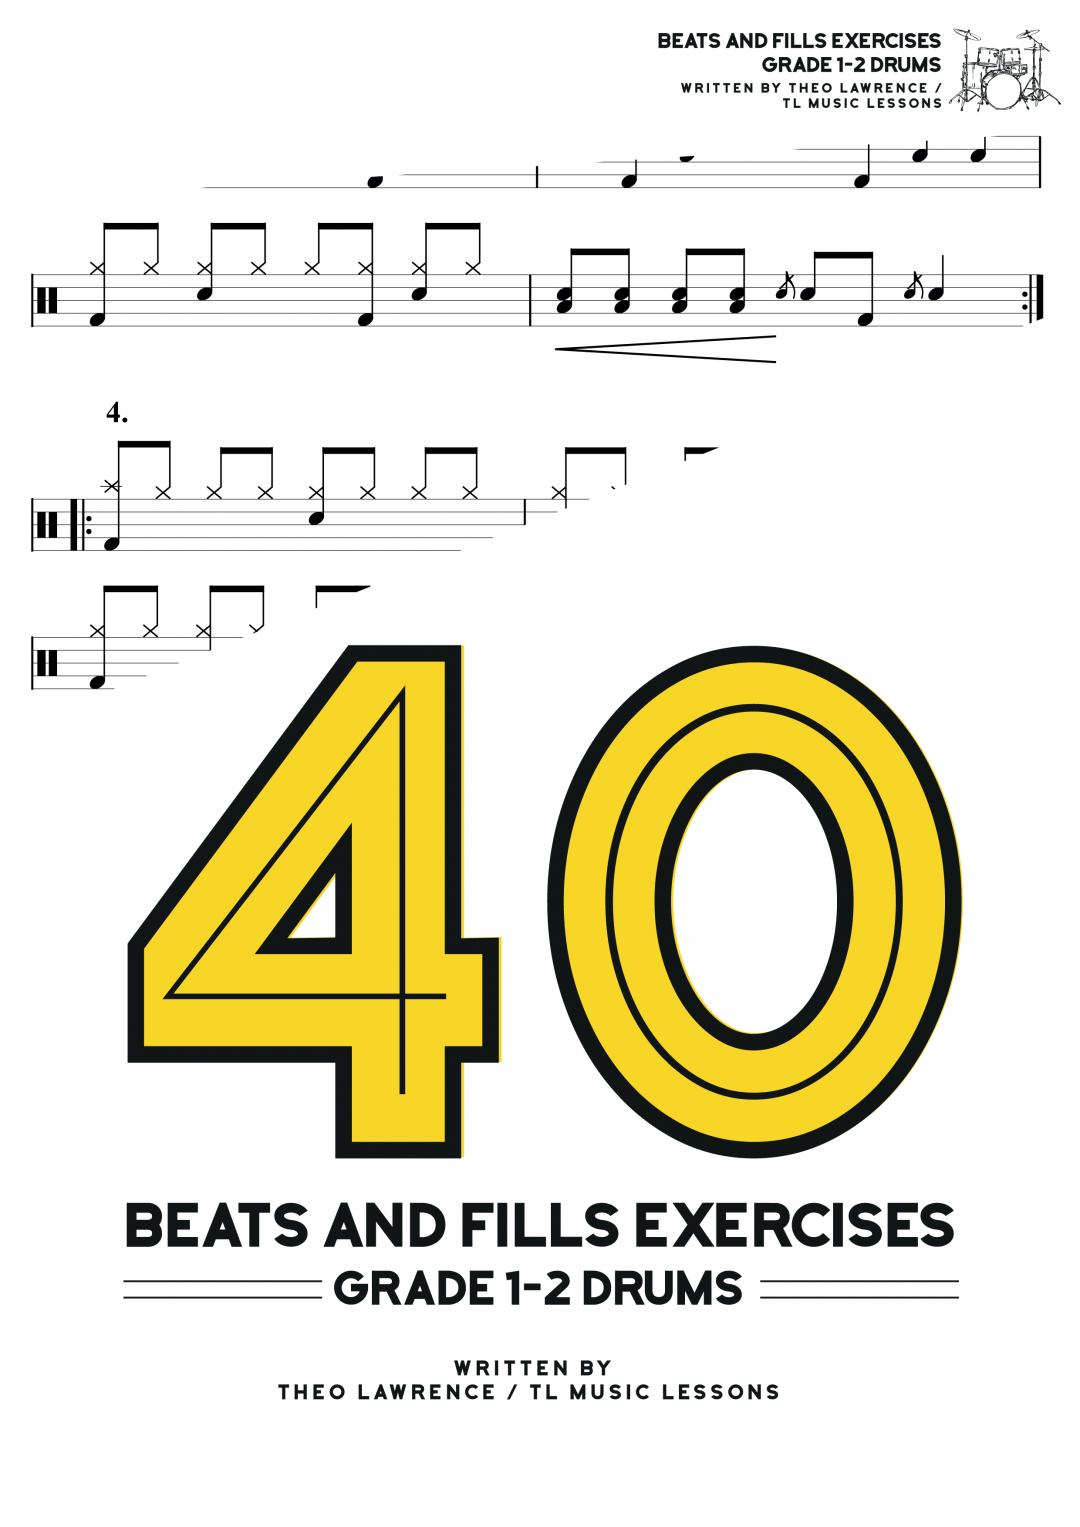 [Premium] – 40 Beats and Fills Exercises Ebook